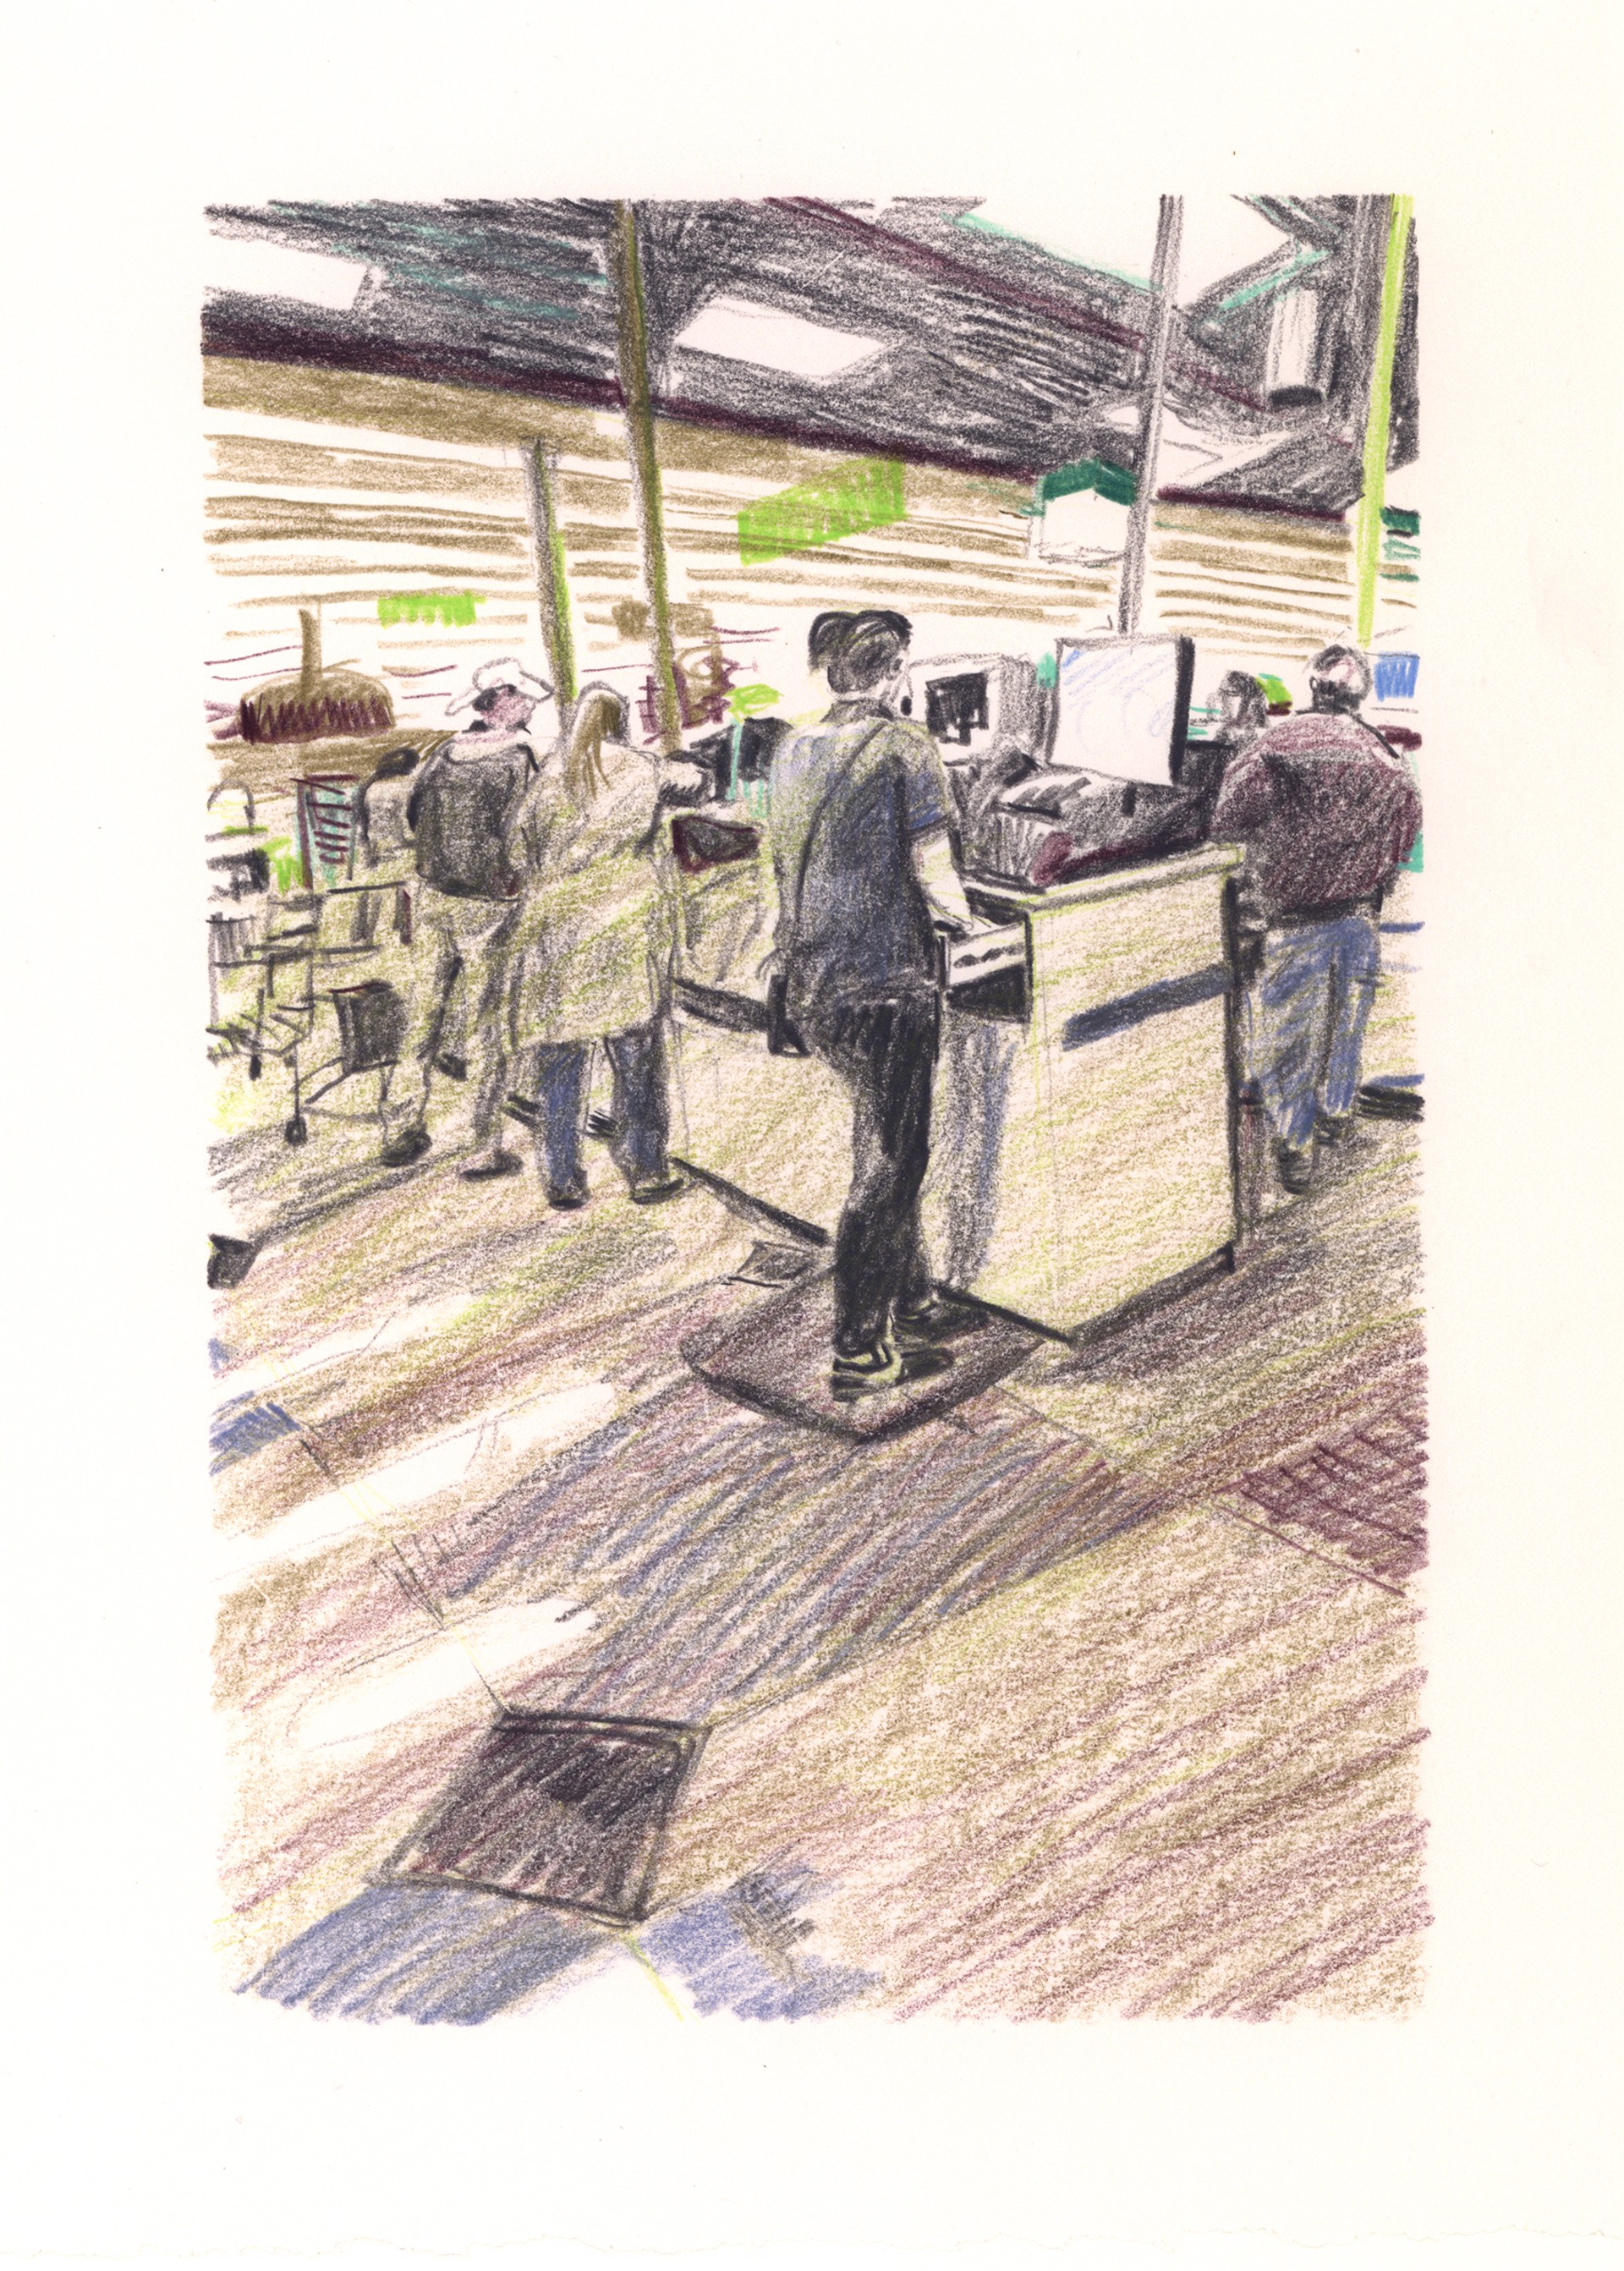 Marketplace/Cashier #5 by Eilis Crean